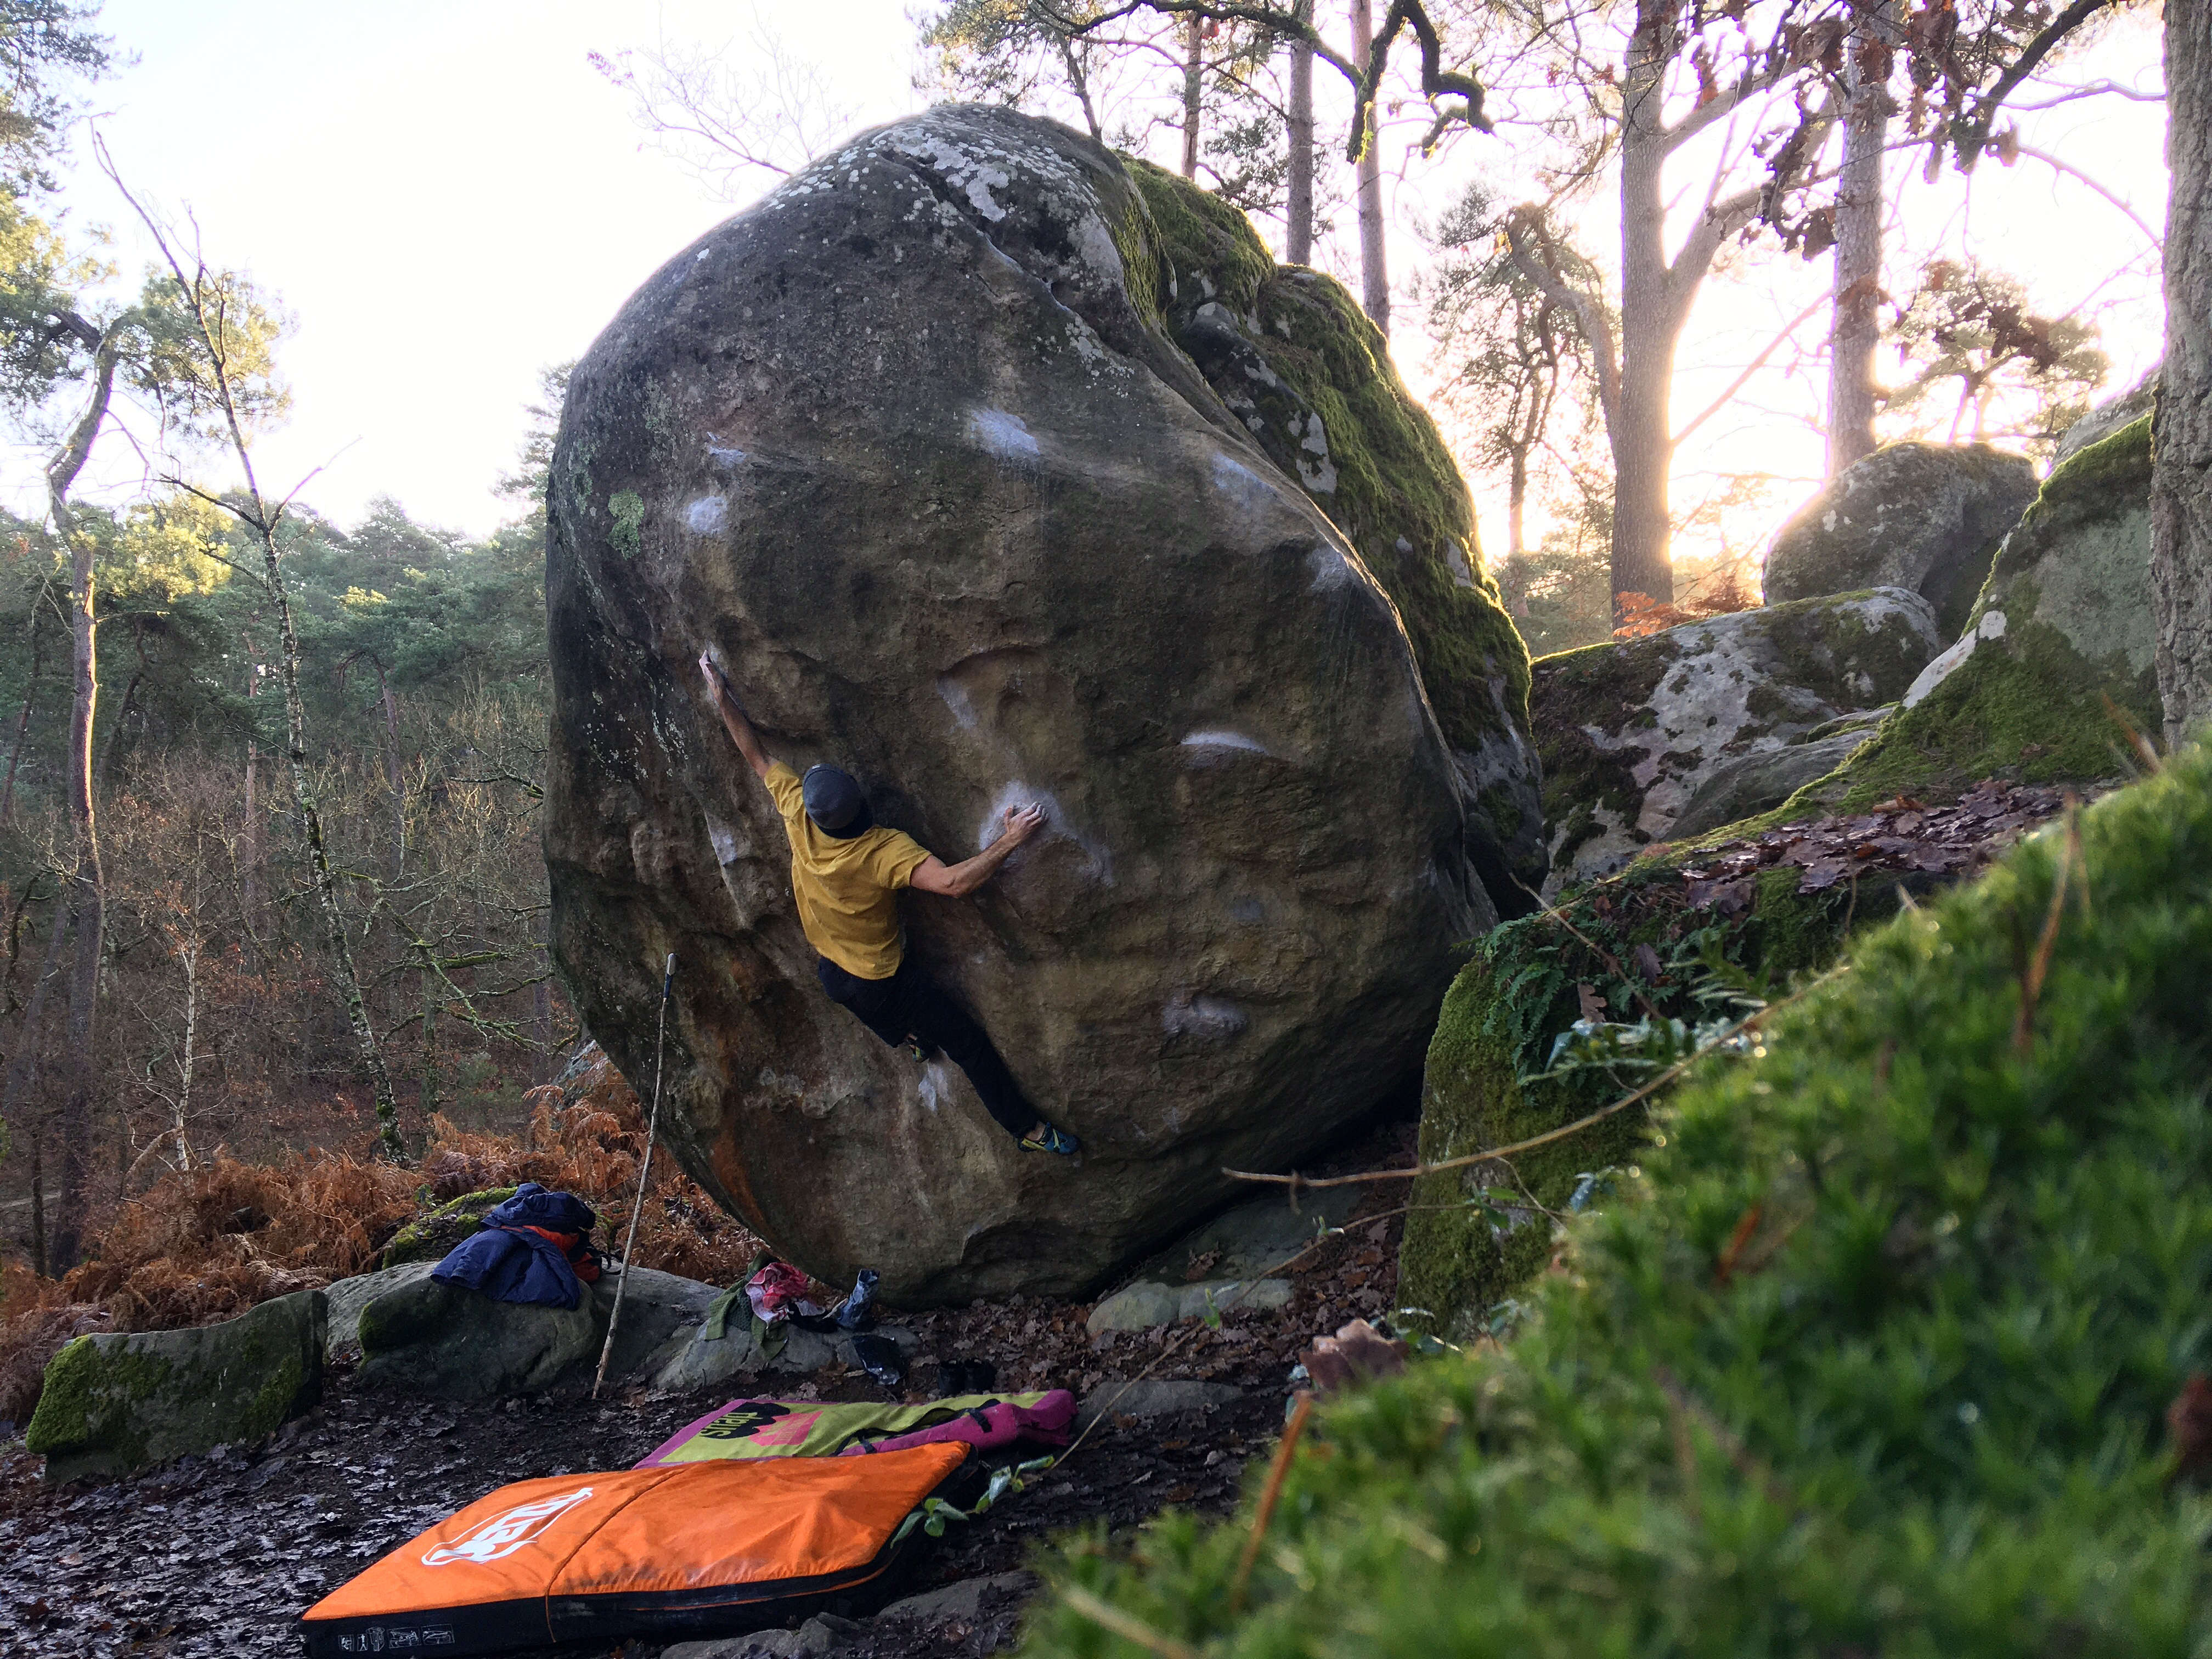 Guide | Kom på klippe! 5 tips til udendørs bouldering fra 5 af Danmarks bedste klatrere